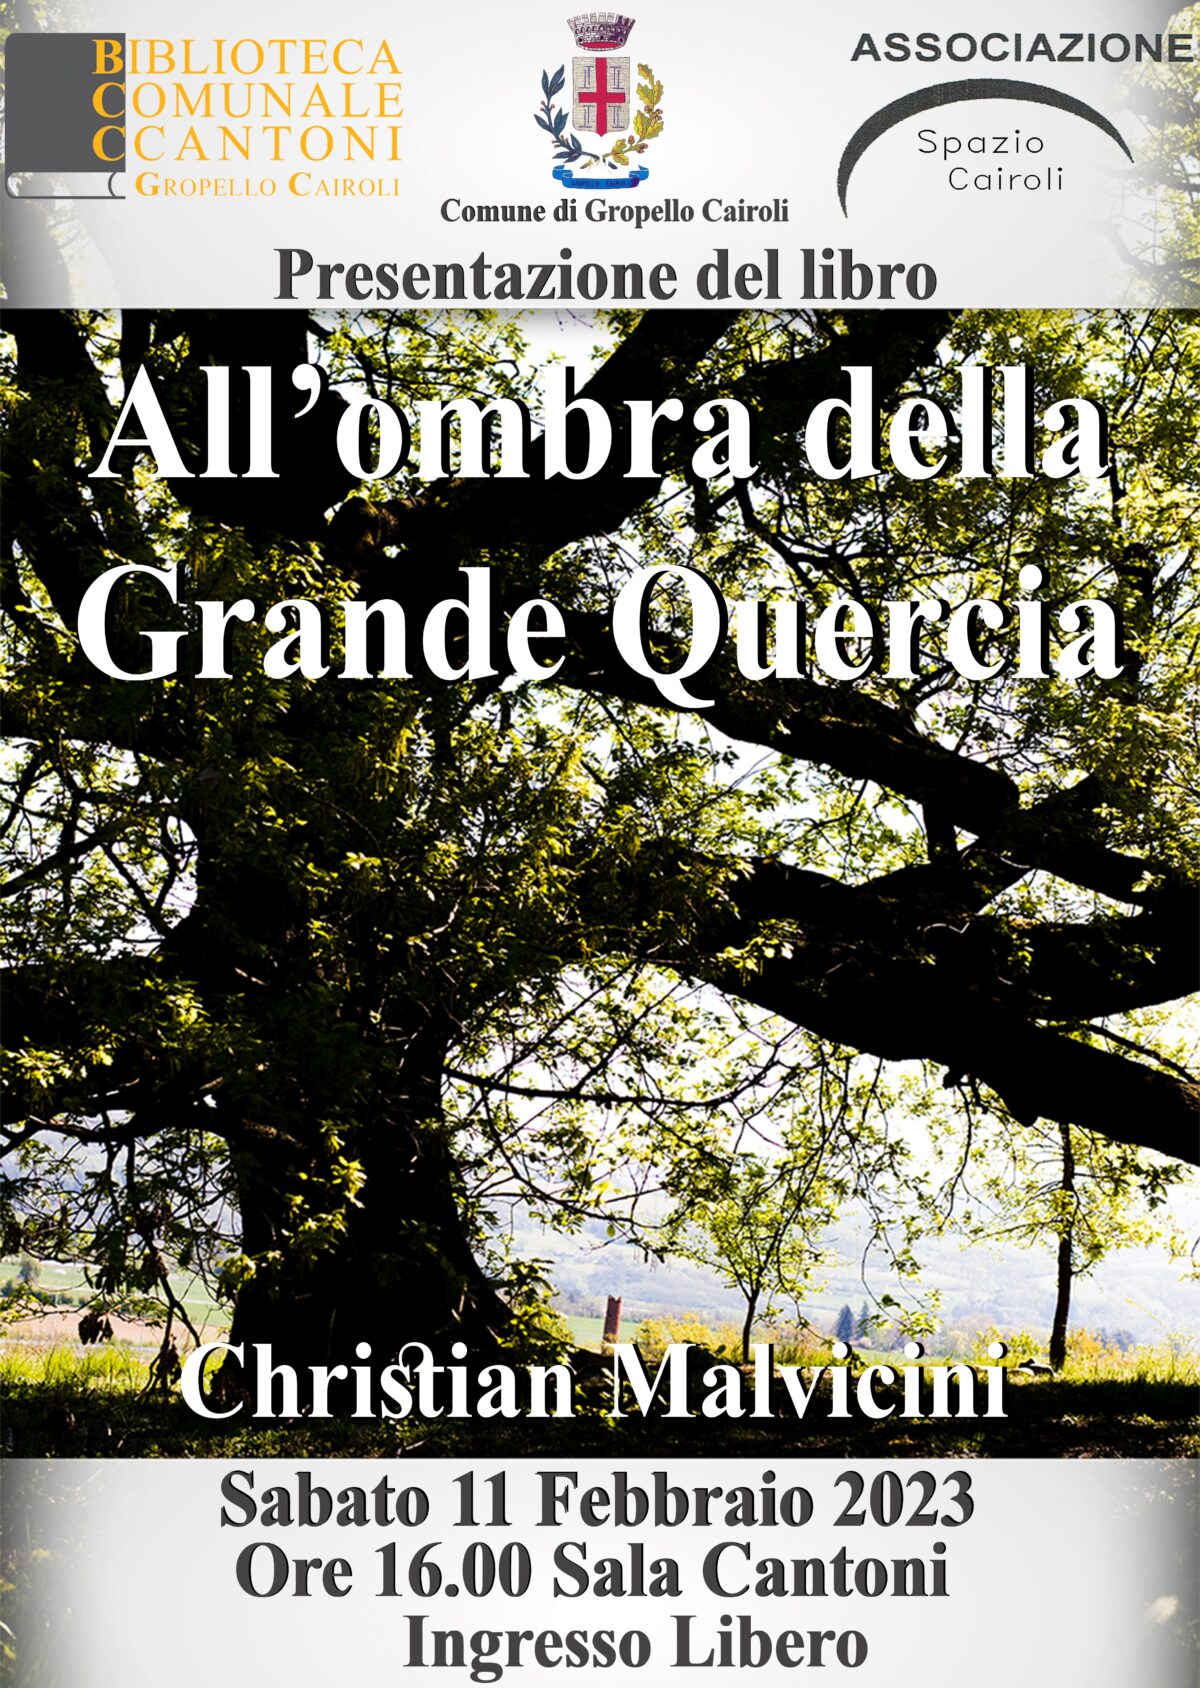 Biblioteca: sabato 11 febbraio alle ore 16,00 presentazione del libro “All’ombra della grande quercia” di Christian Malvicini